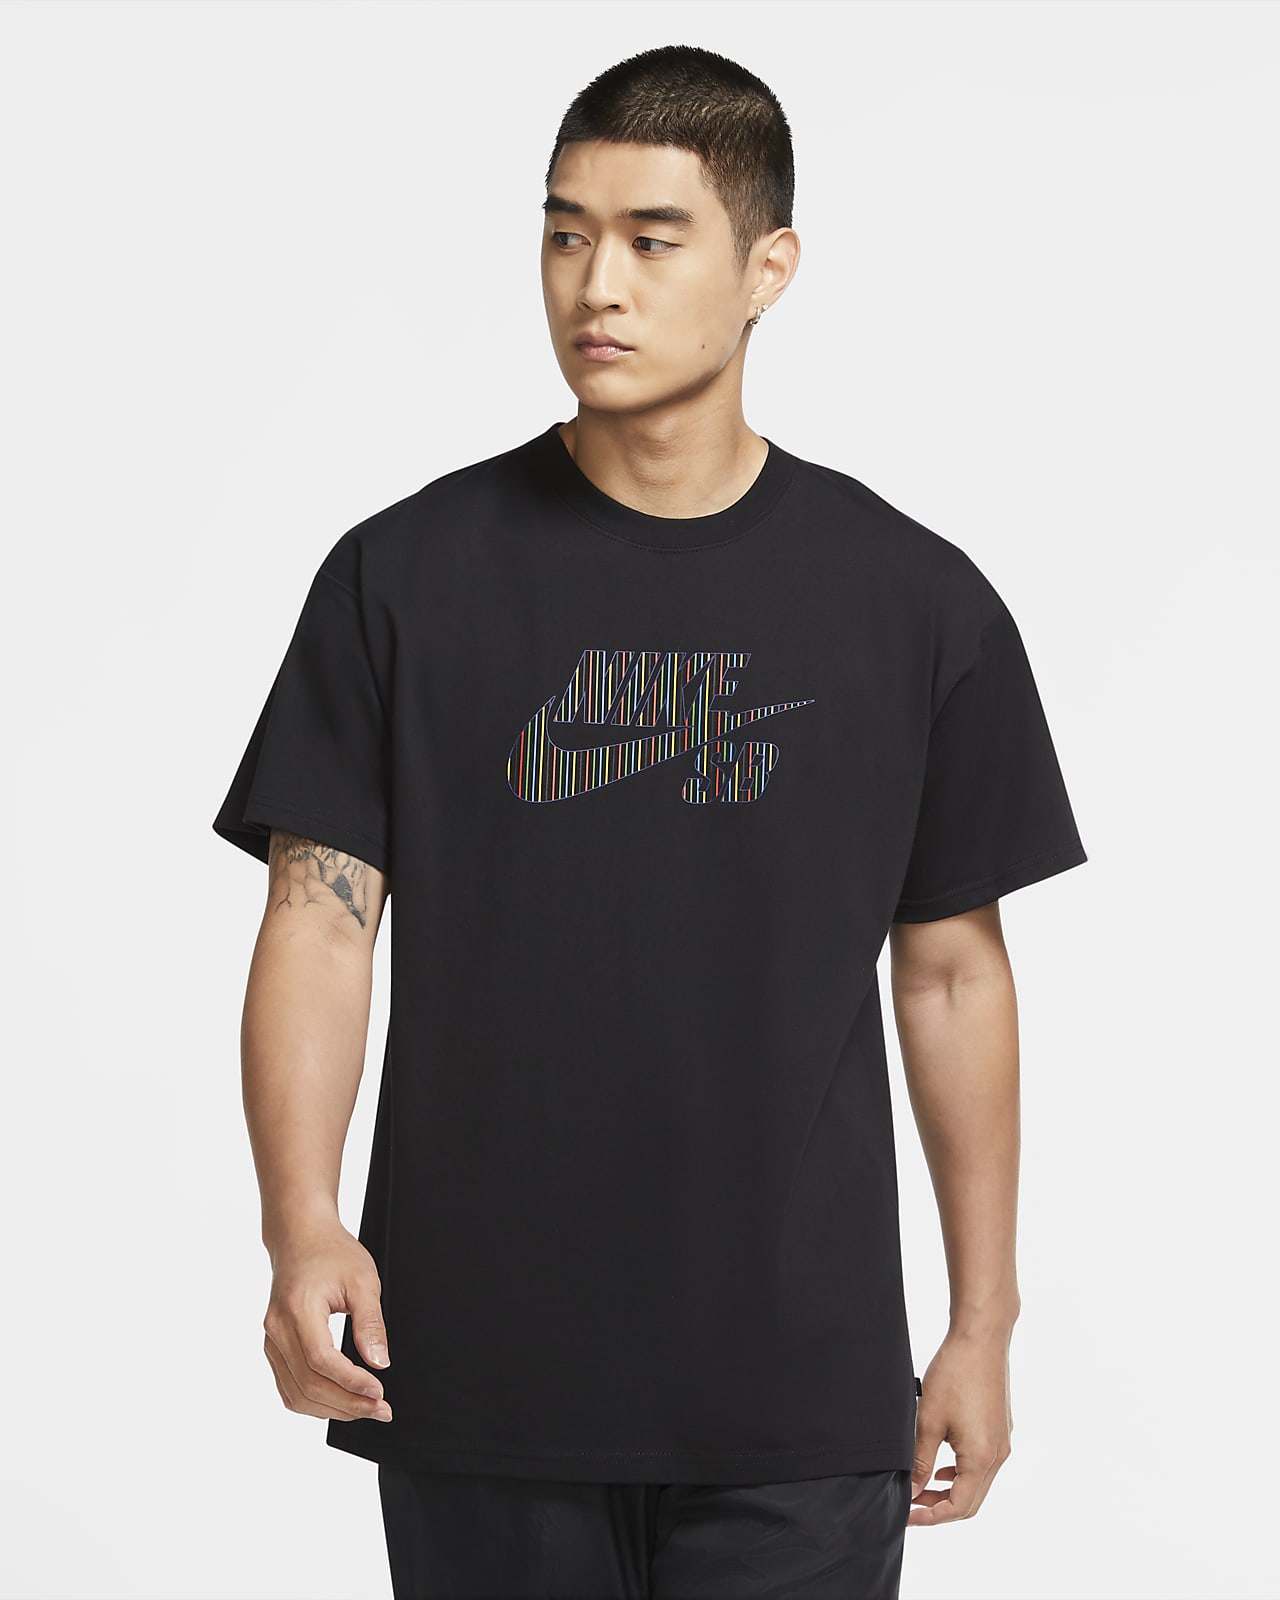 Nike Sb Skateboard T Shirt Mit Logo Fur Herren Nike At